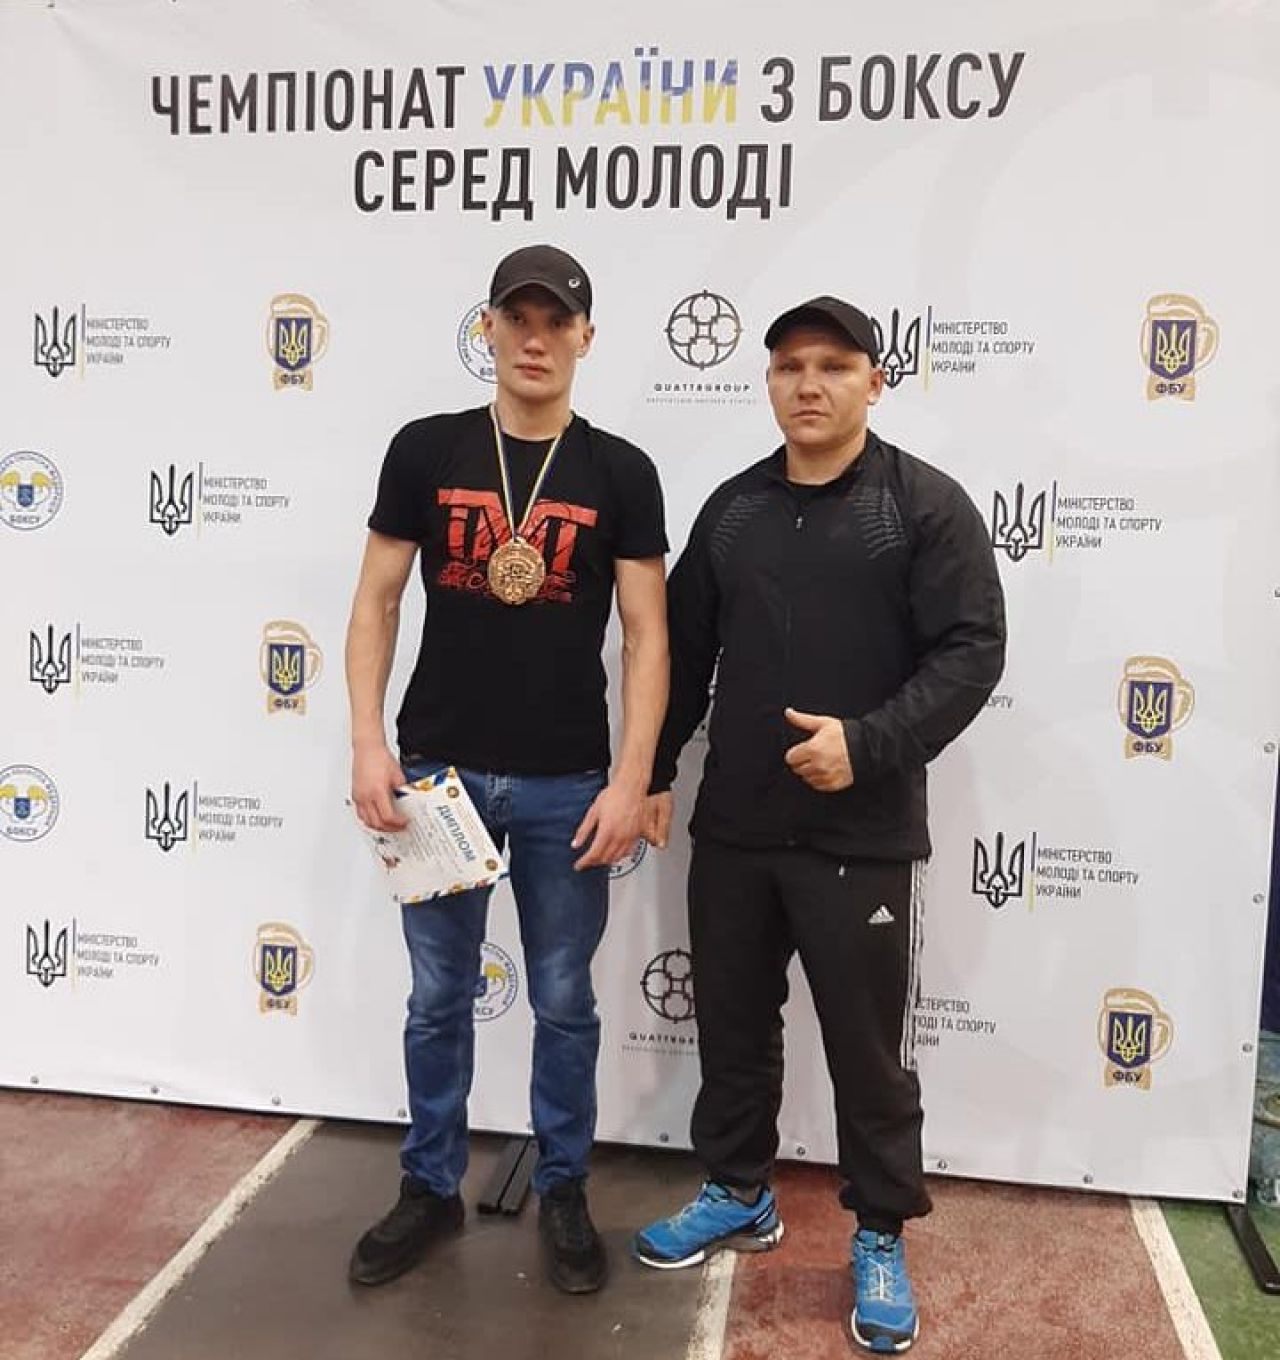 Шепетівчанин здобув бронзу на Чемпіонаті України з боксу серед молоді